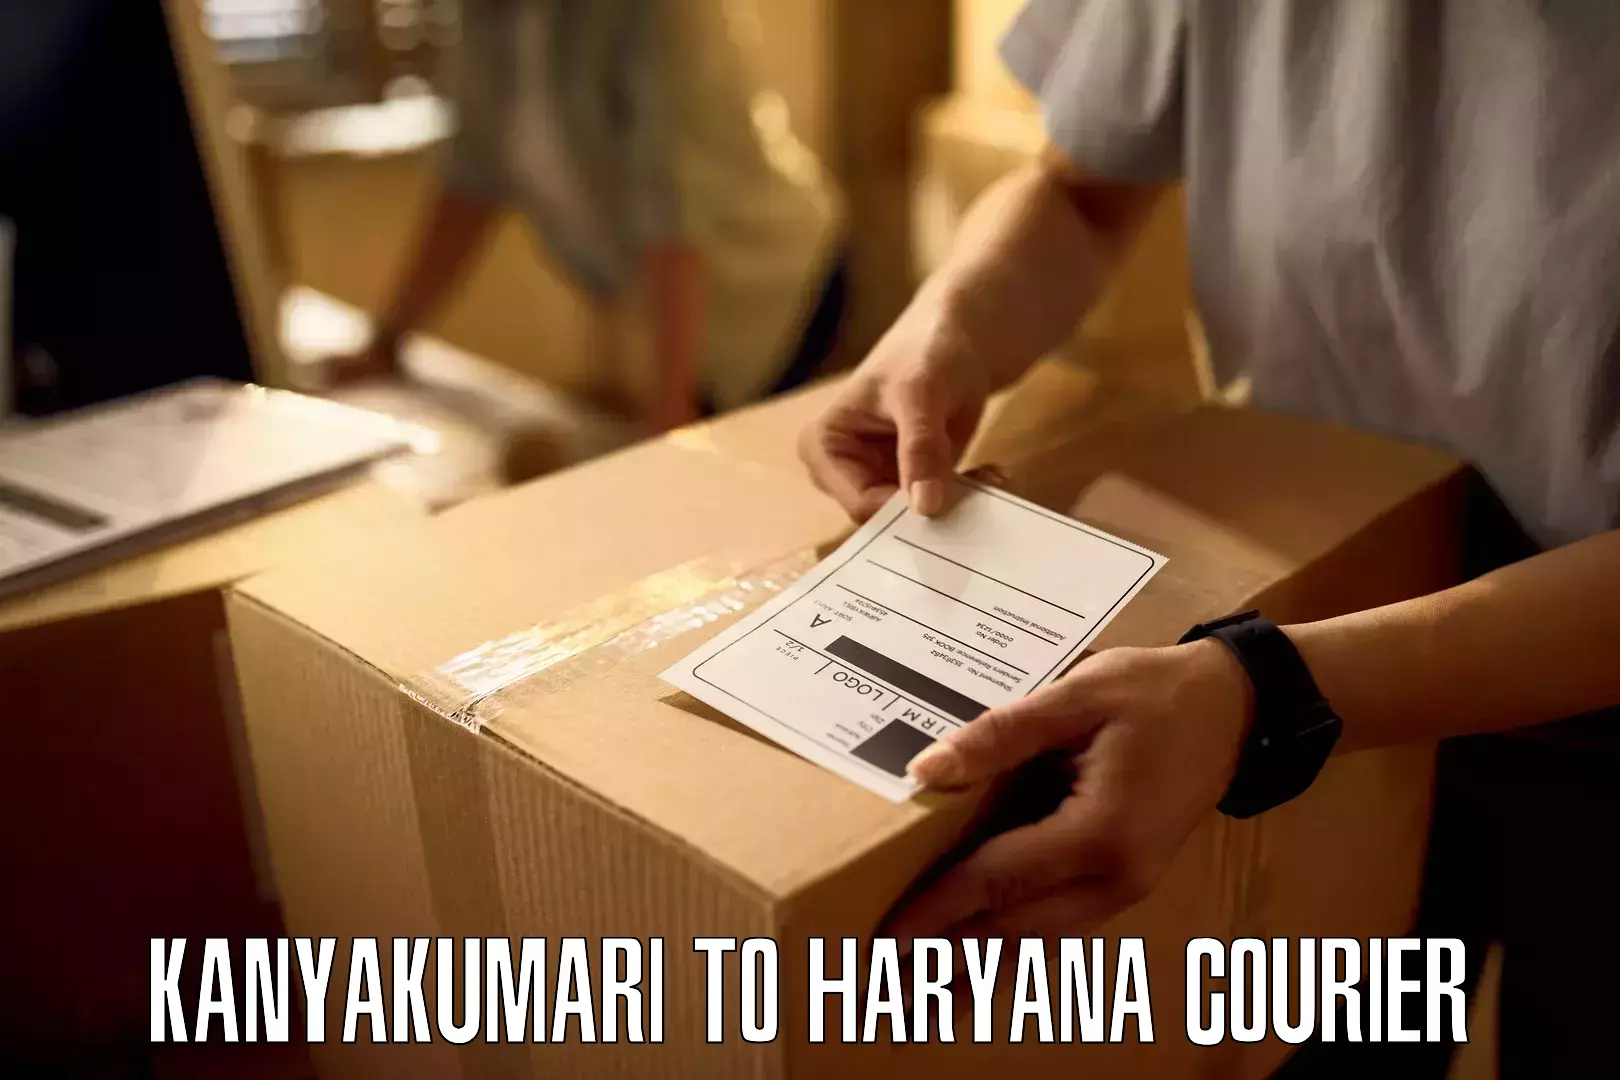 On-call courier service in Kanyakumari to Haryana